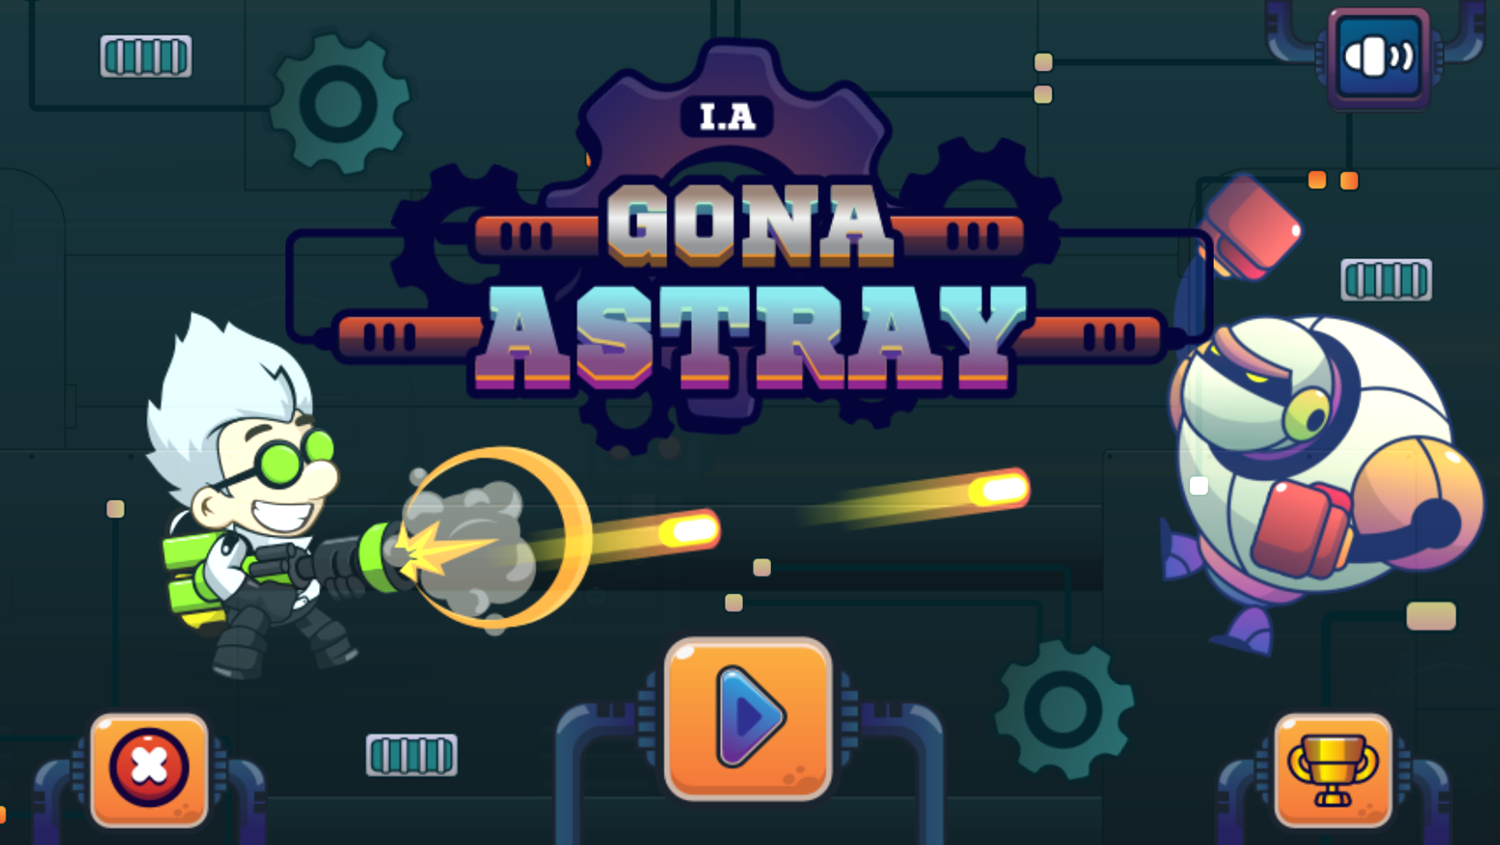 AI Gone Astray Game Welcome Screen Screenshot.